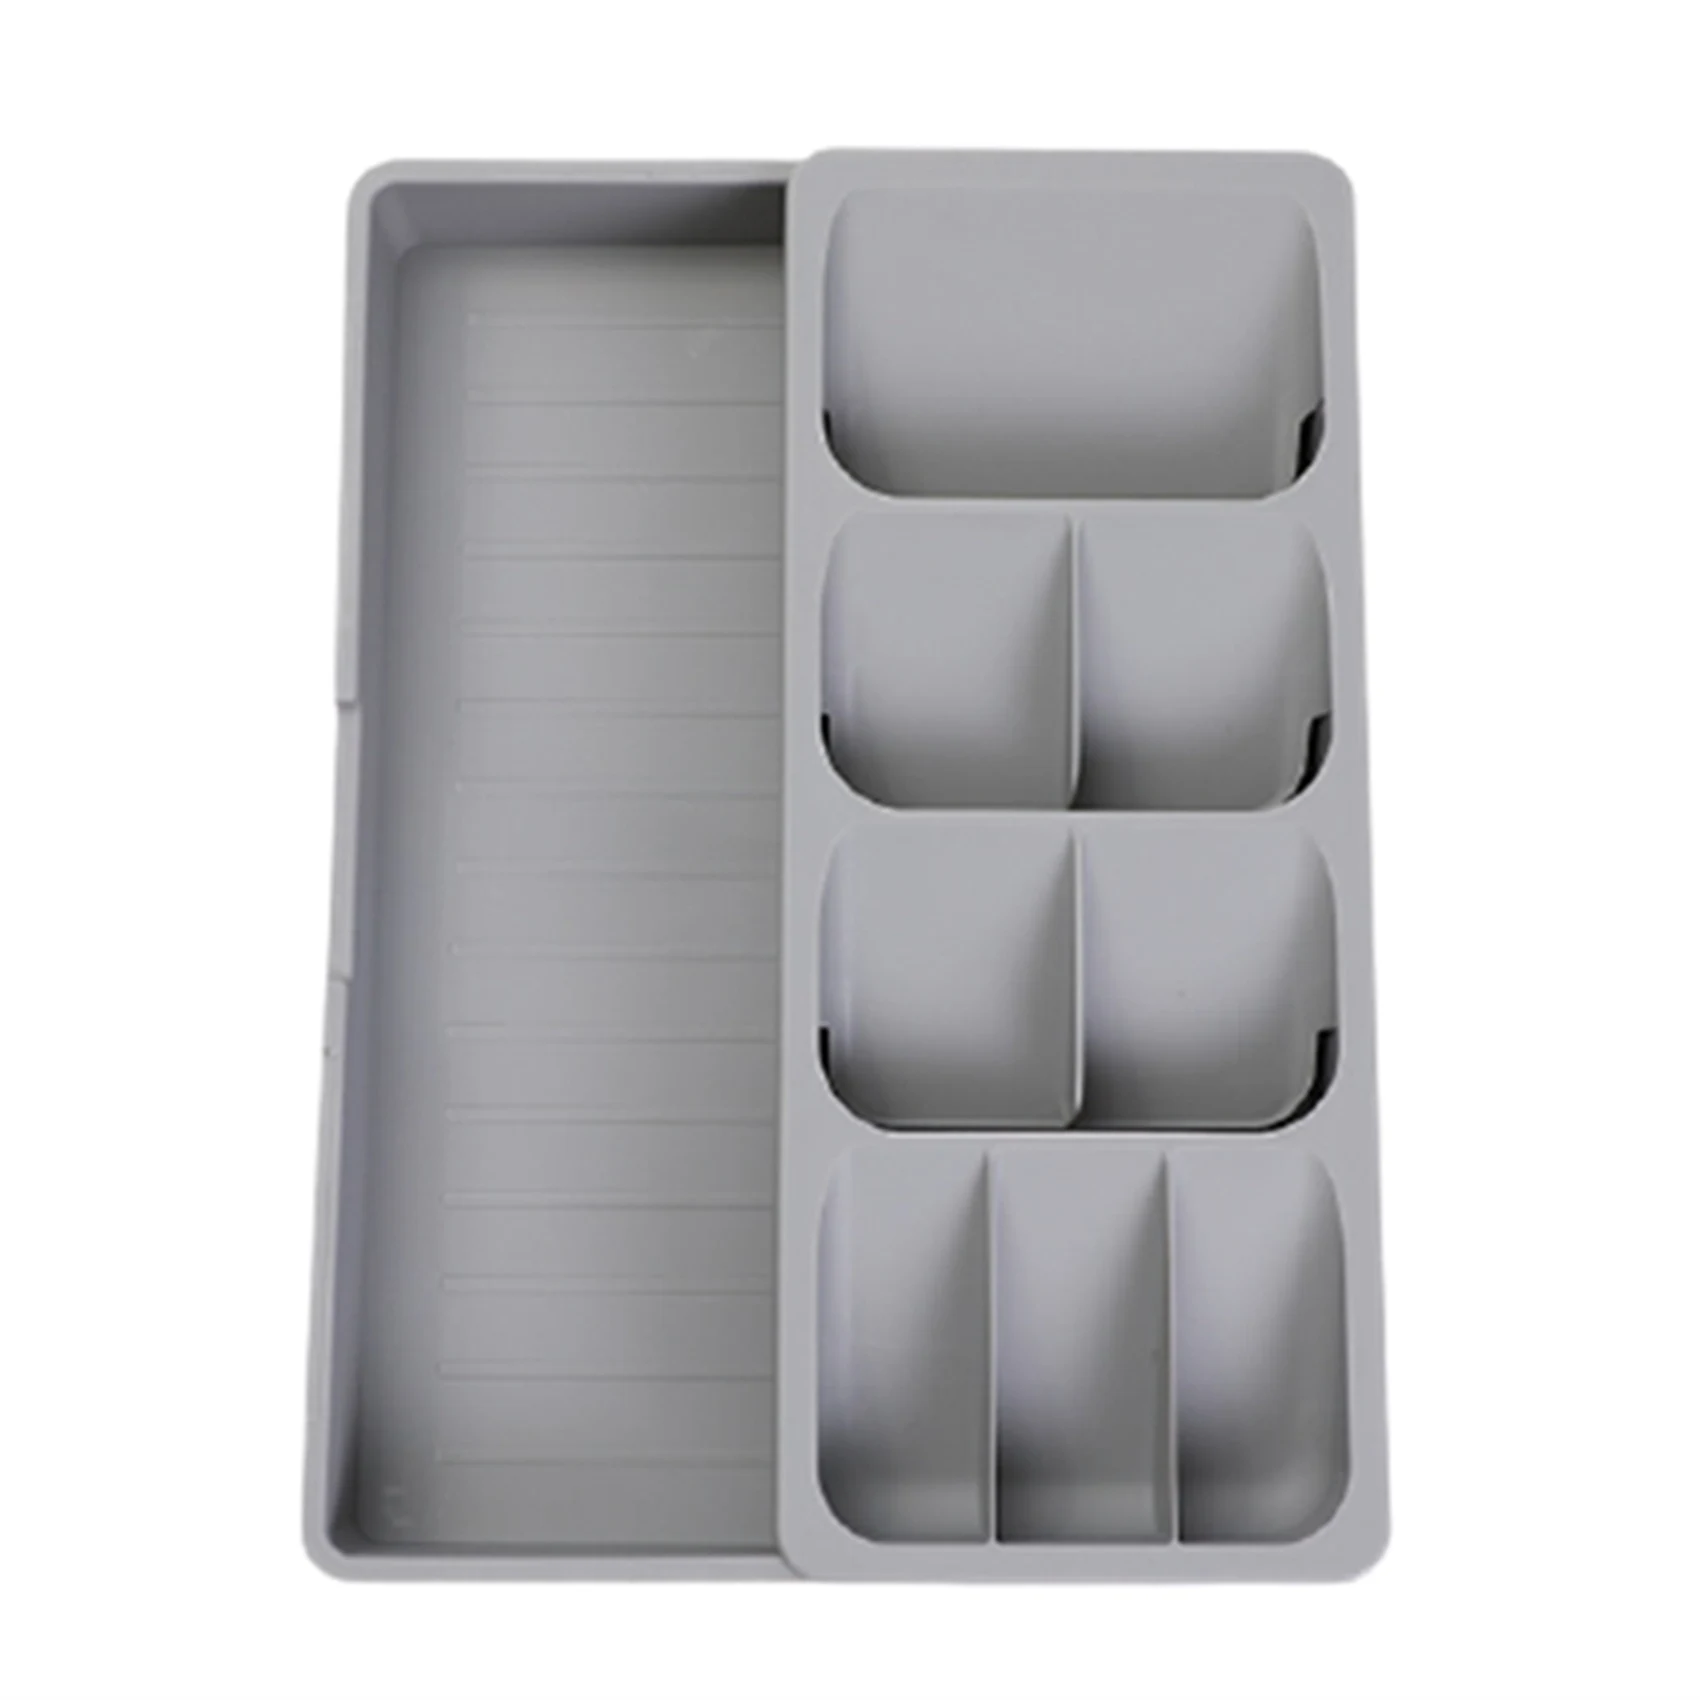 

Kitchen Organizer Cutlery Drawer Storage Box Tray Fork Spoon Divider Container for Kitchen Utensils B